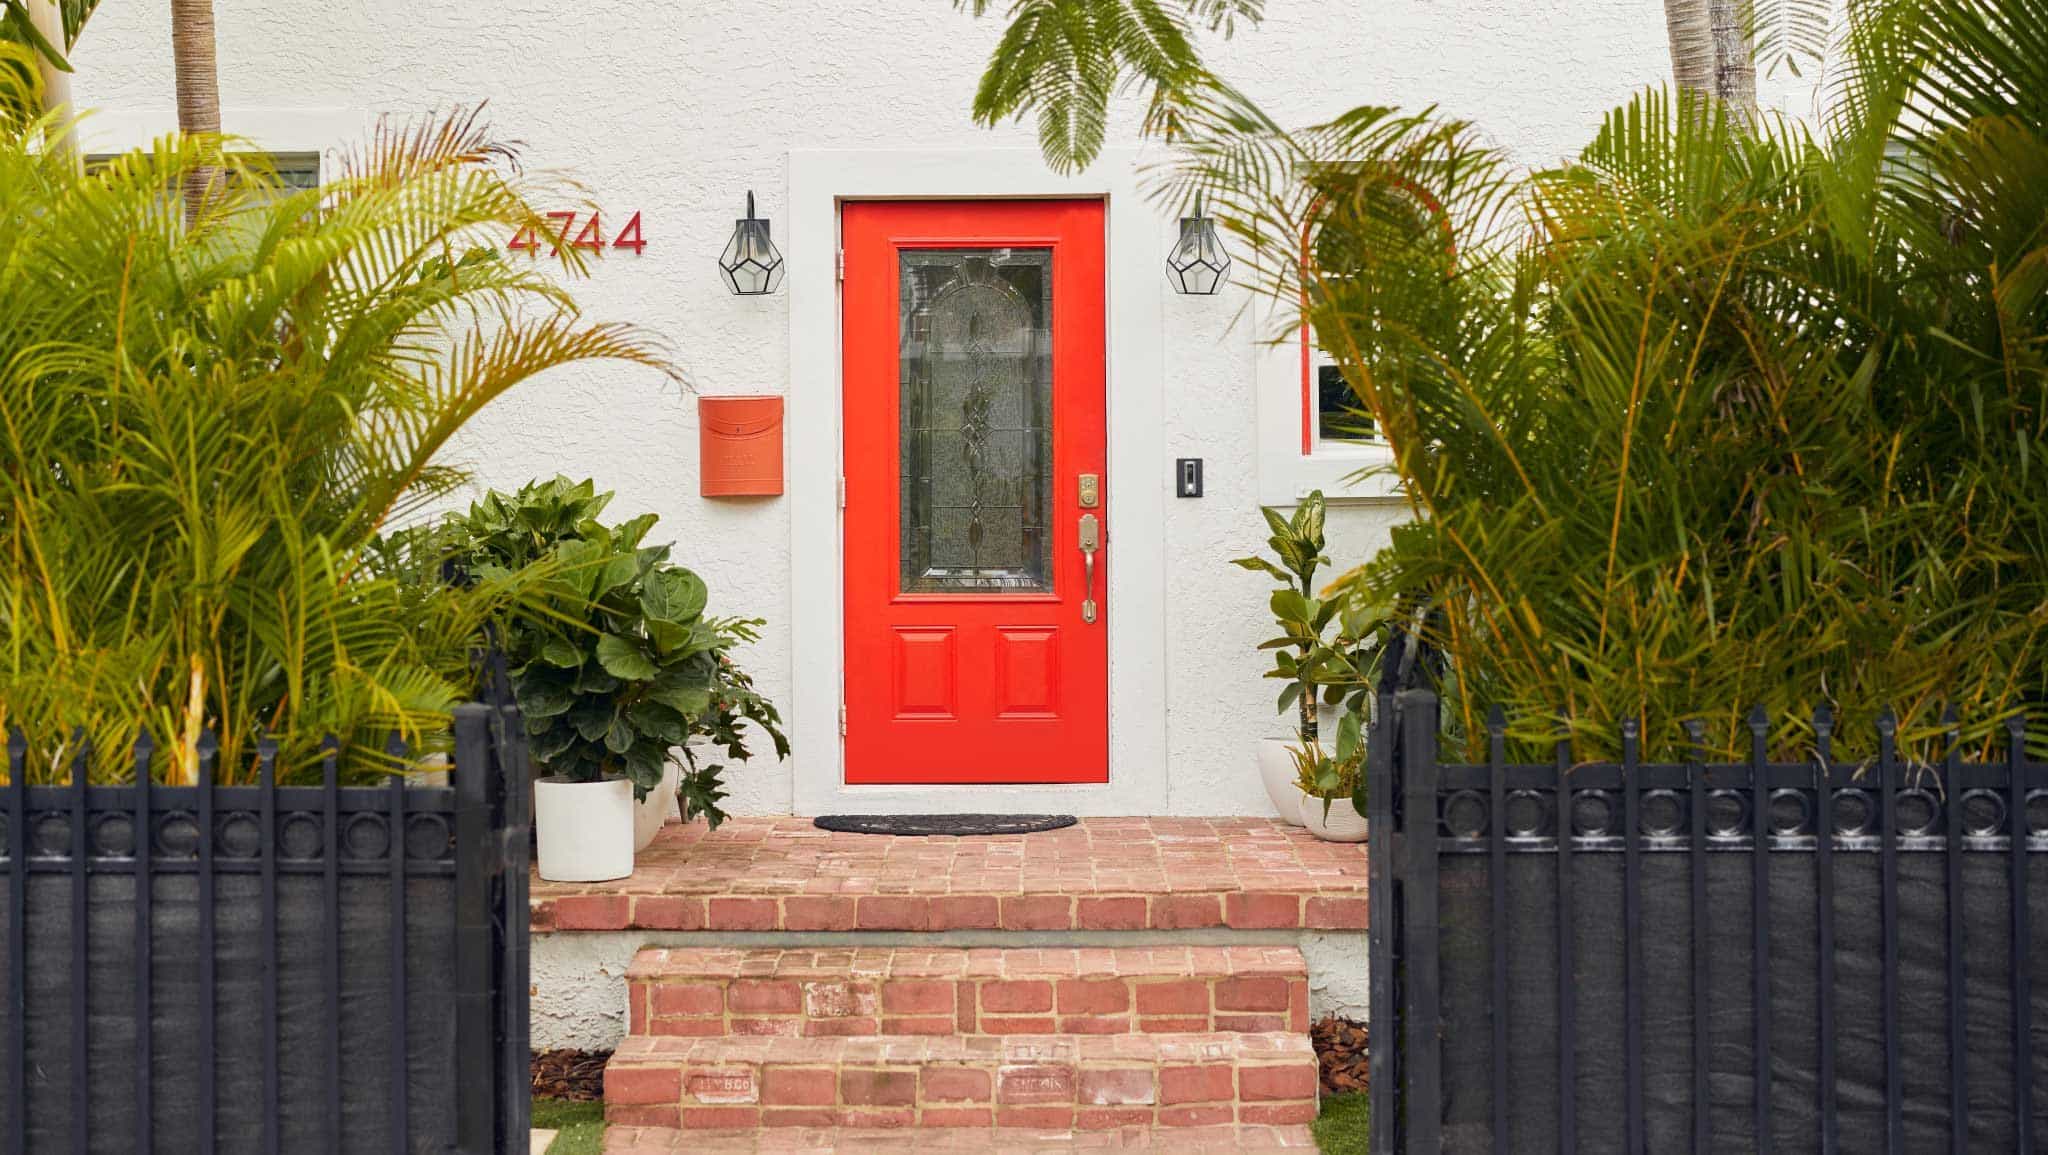 鲜红色的前门与浅色的房屋外观和黑色的前院栅栏形成对比